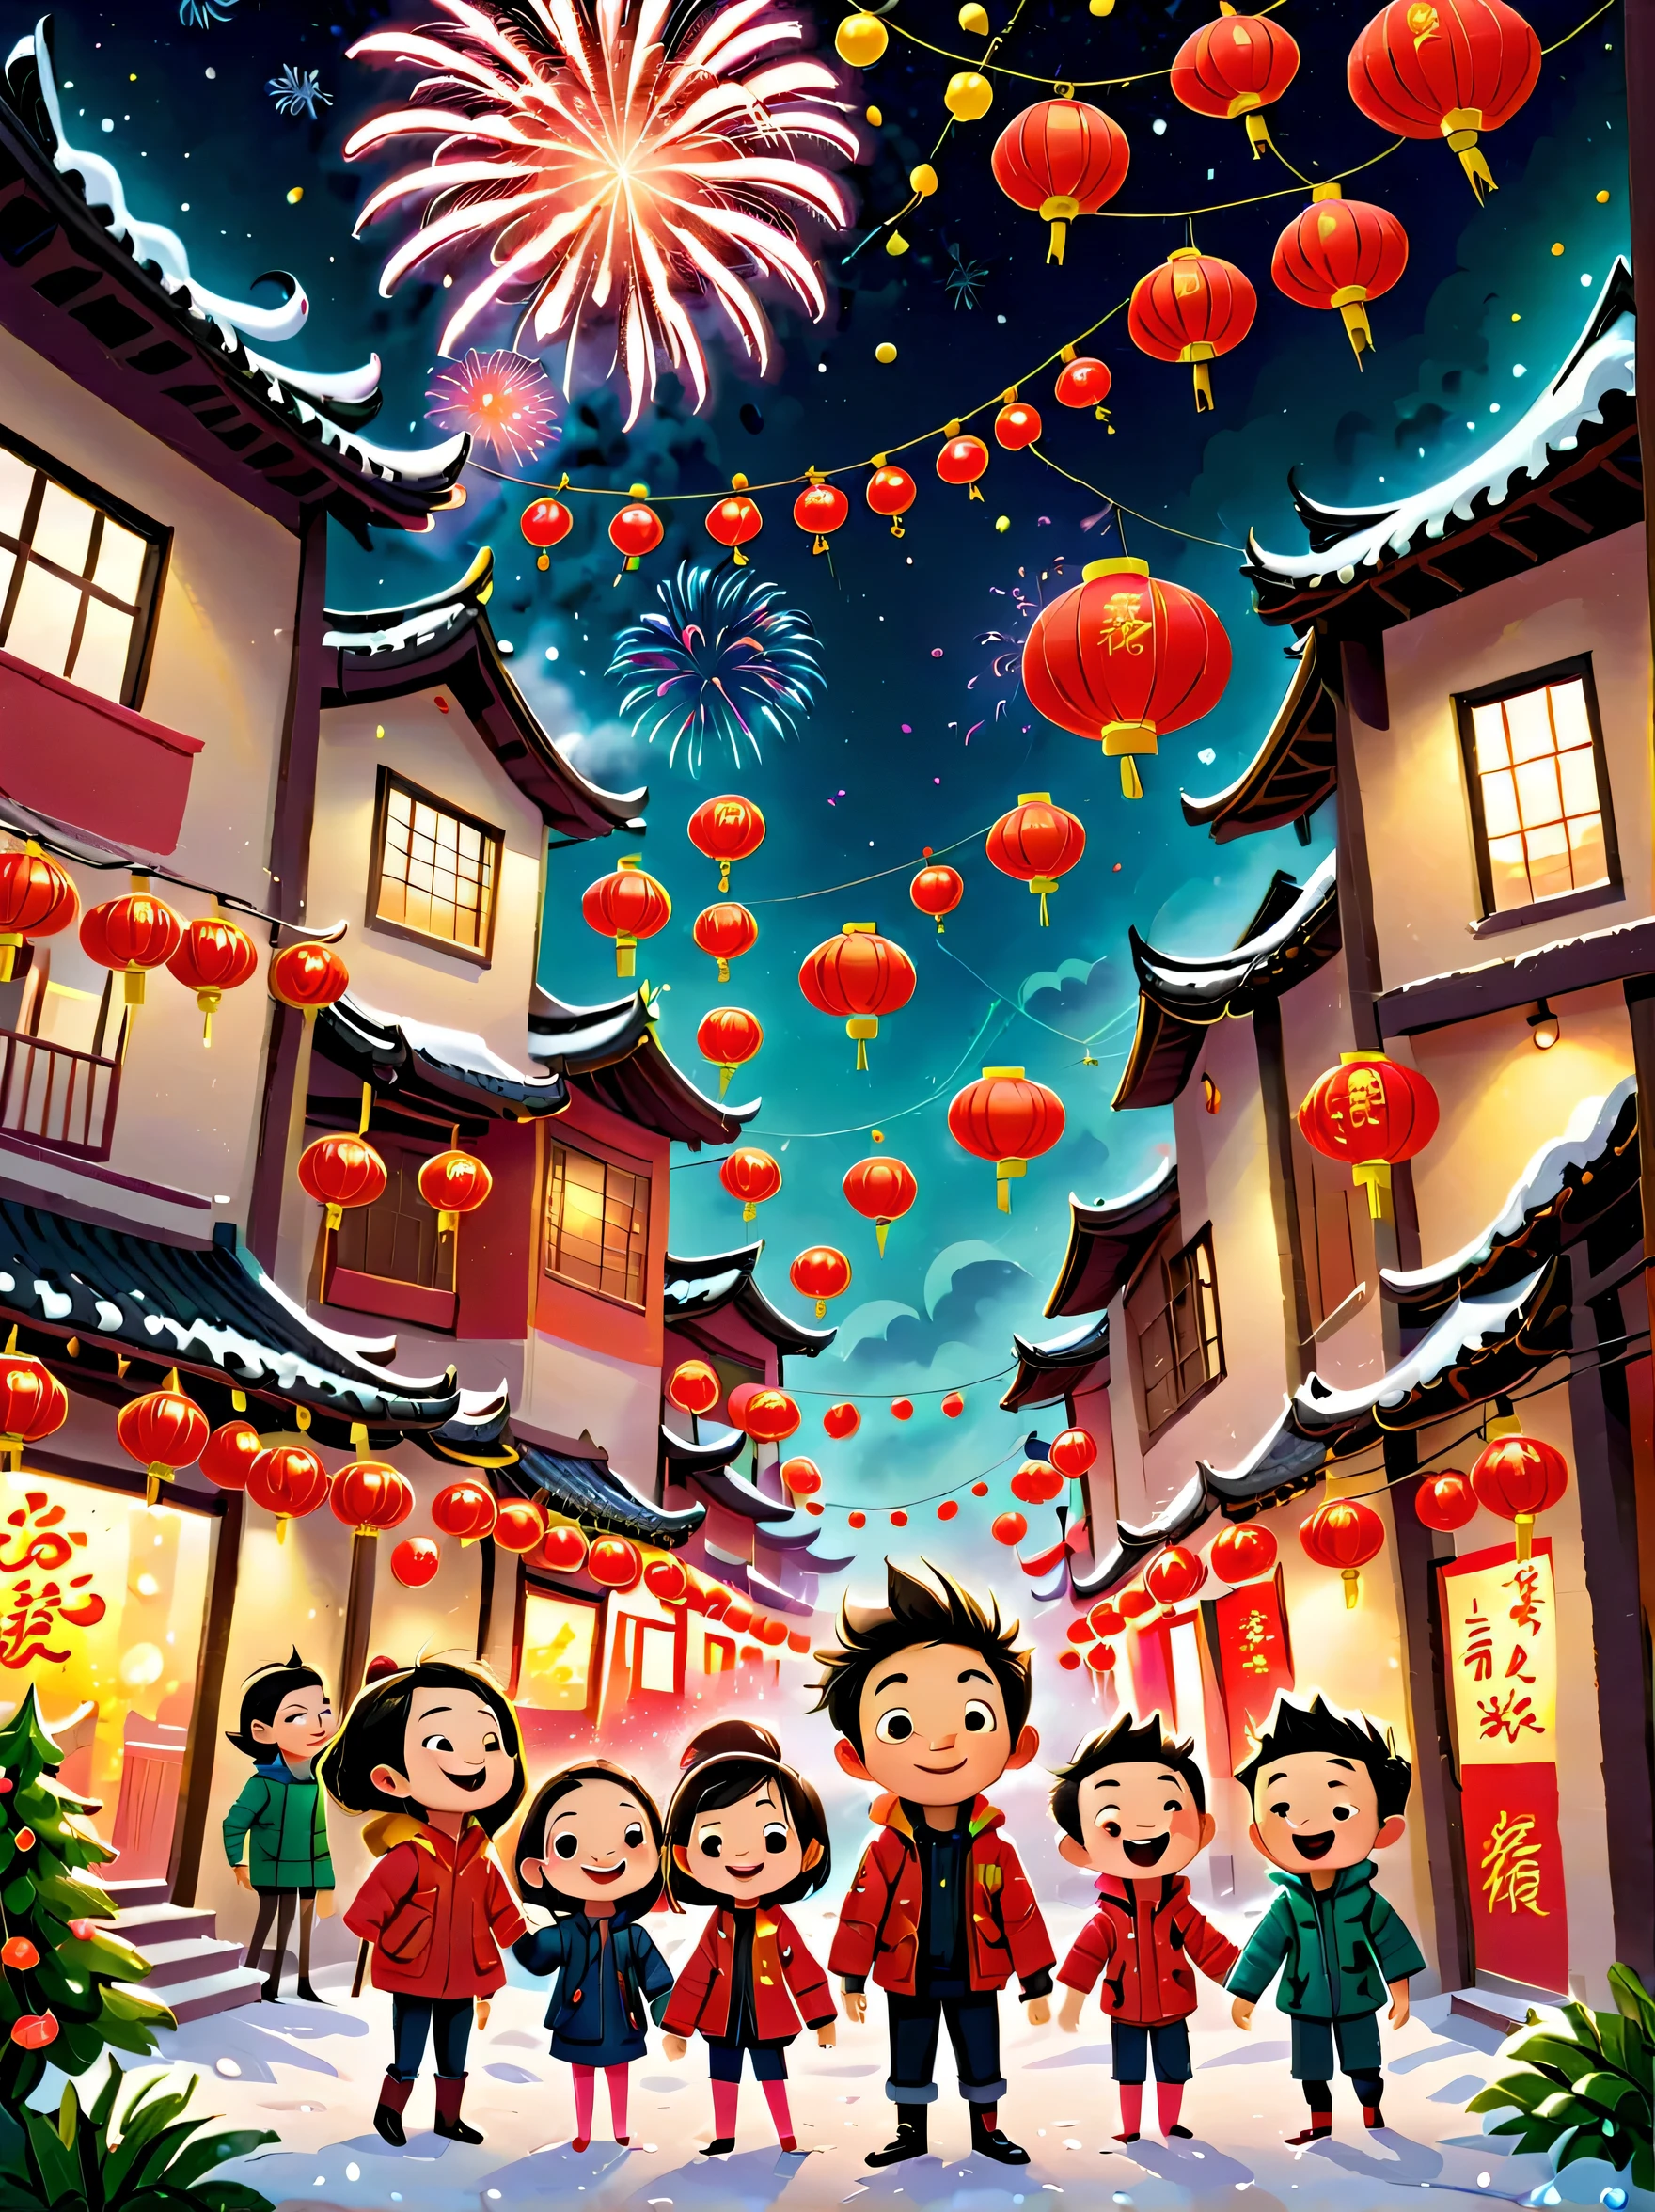 Kinderbuch, (Tim Burton-Stil)，(Illustrationen fangen die Essenz des chinesischen Neujahrs ein)，(Moderne Stadt:1.2), (Laternen und Girlanden)，Es schneit，In der freudigen Atmosphäre des neuen Jahres，(5 Kinder in Daunenjacken zündeten Knallkörper)，(Es gibt viele Feuerwerke am Himmel)，das Bild war wunderschön，(Detaillierte und lebendige Kinder&#39;handgezeichnete Illustrationen)，Personen anzeigen&#39;s Ausdrücke